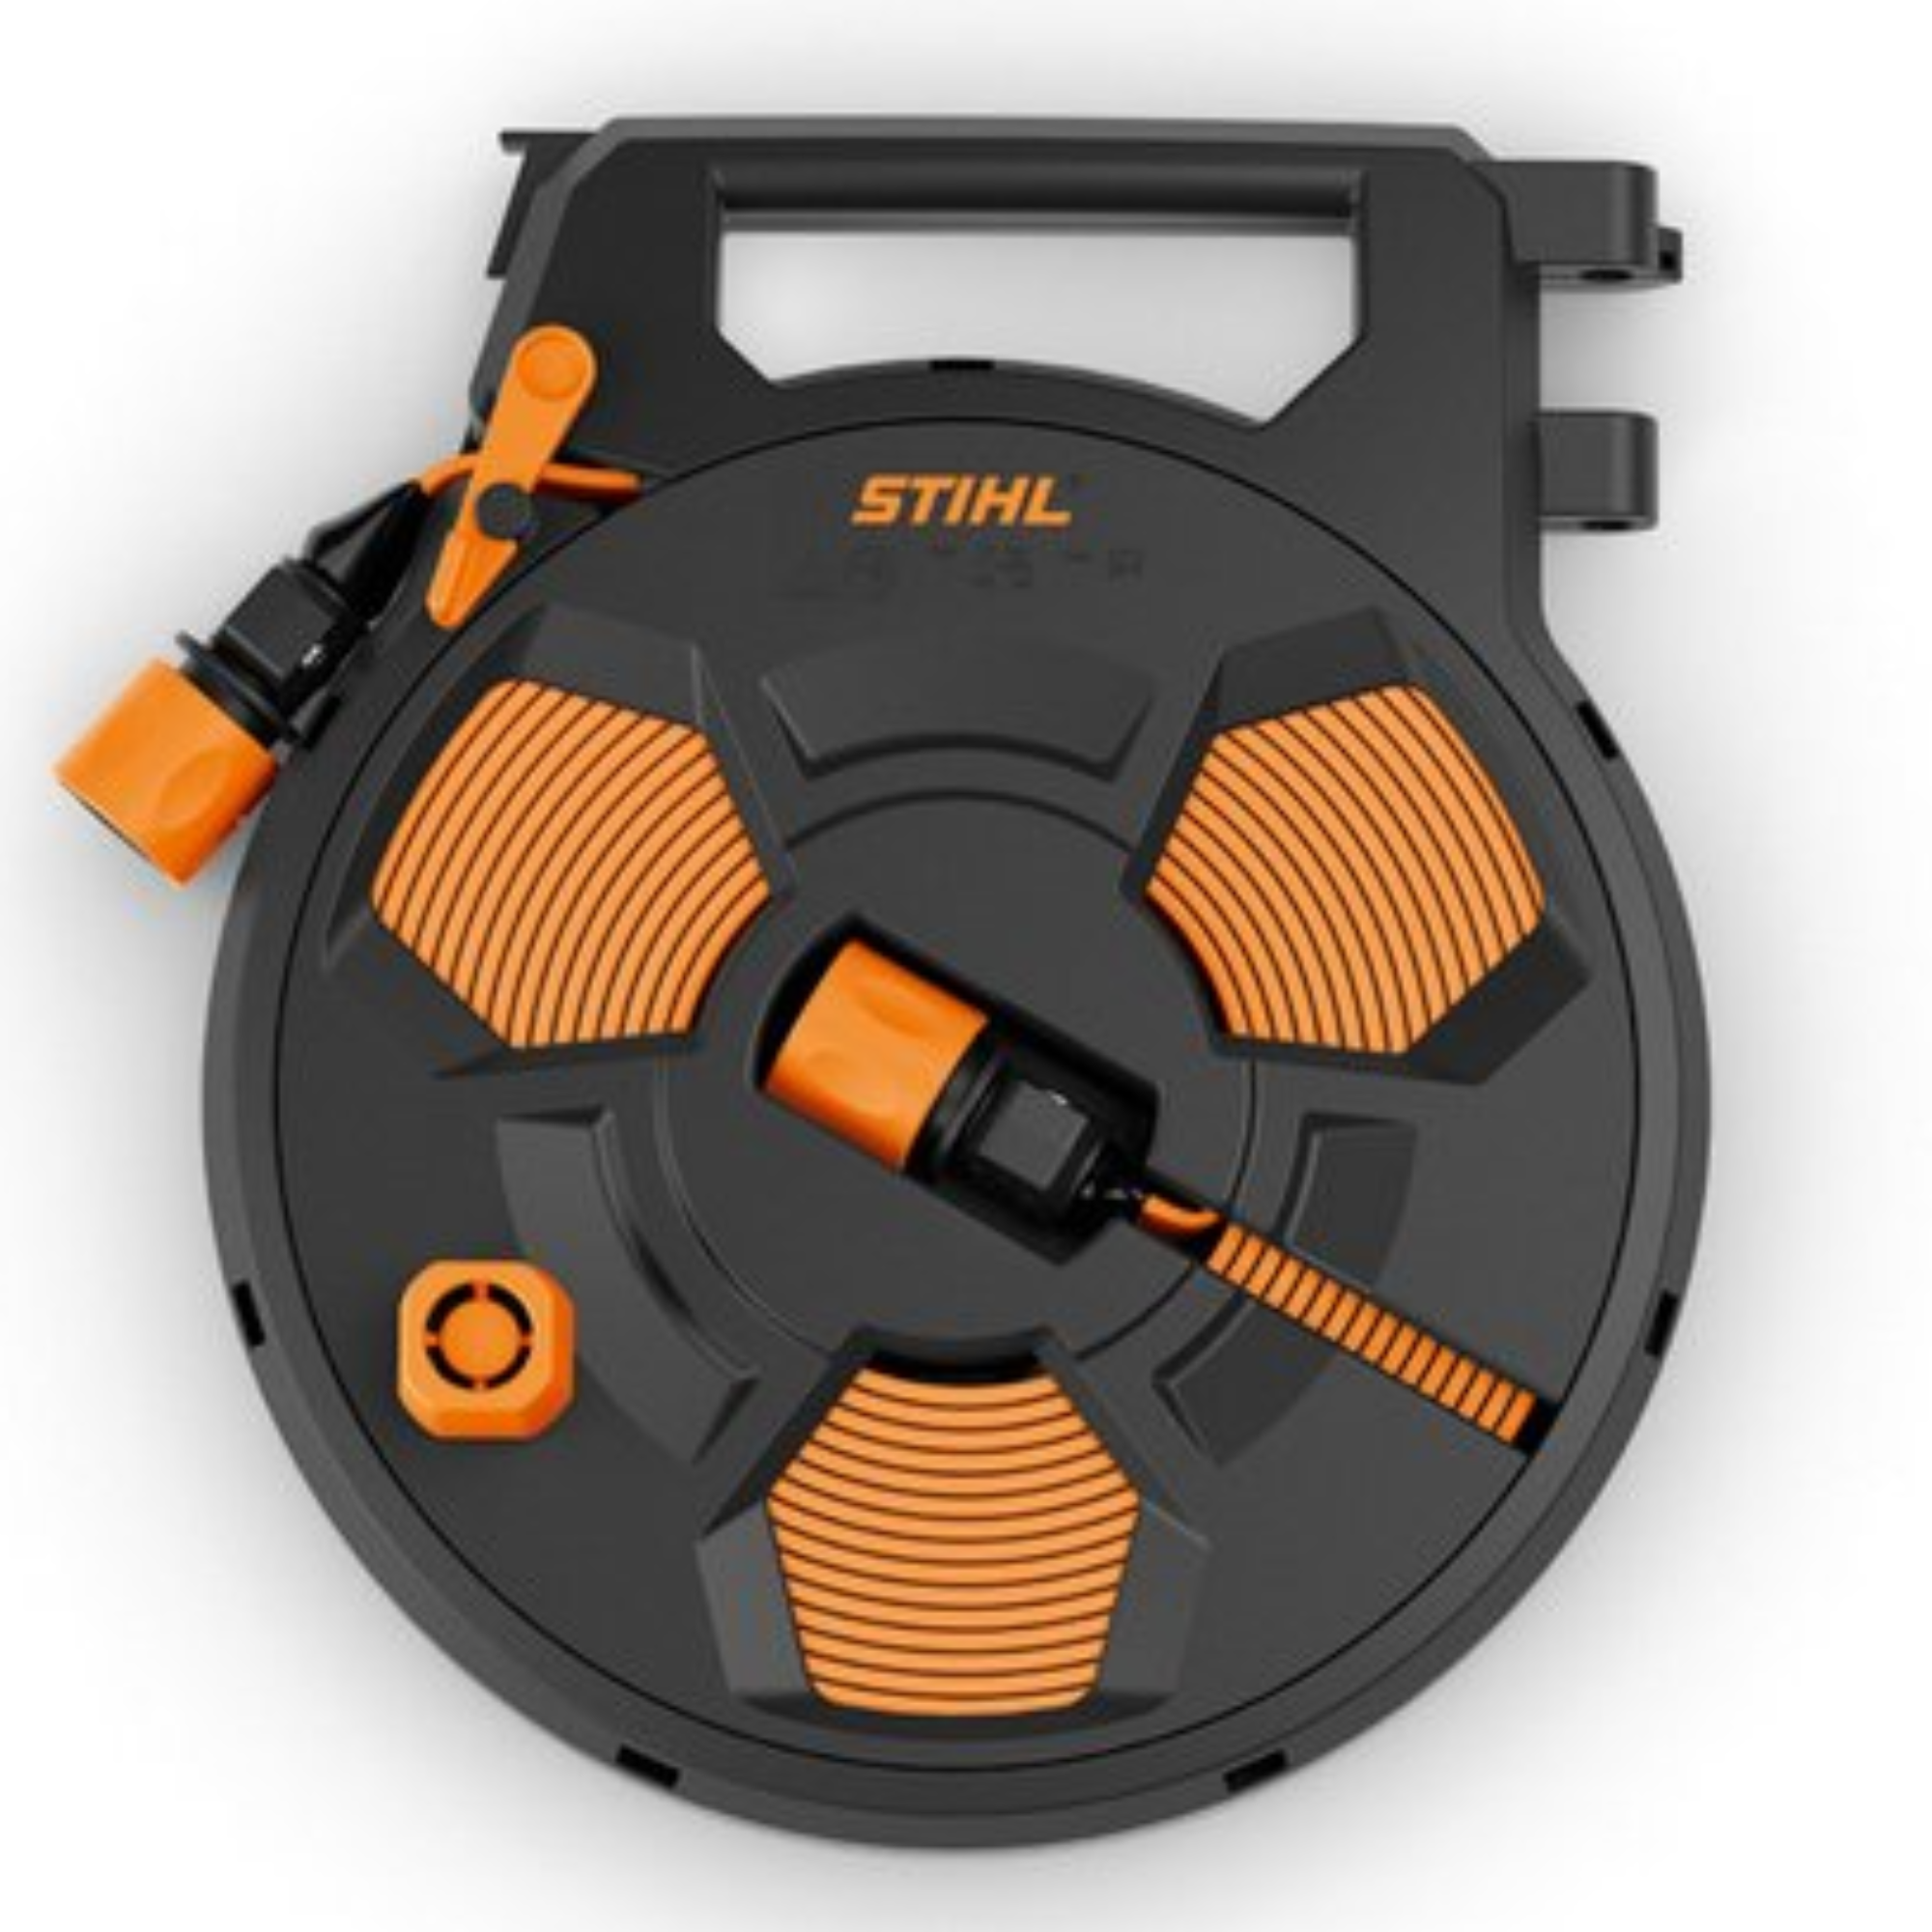 STIHL Pressure Washer Hose Cassette | For RE Models | 4910 500 8601